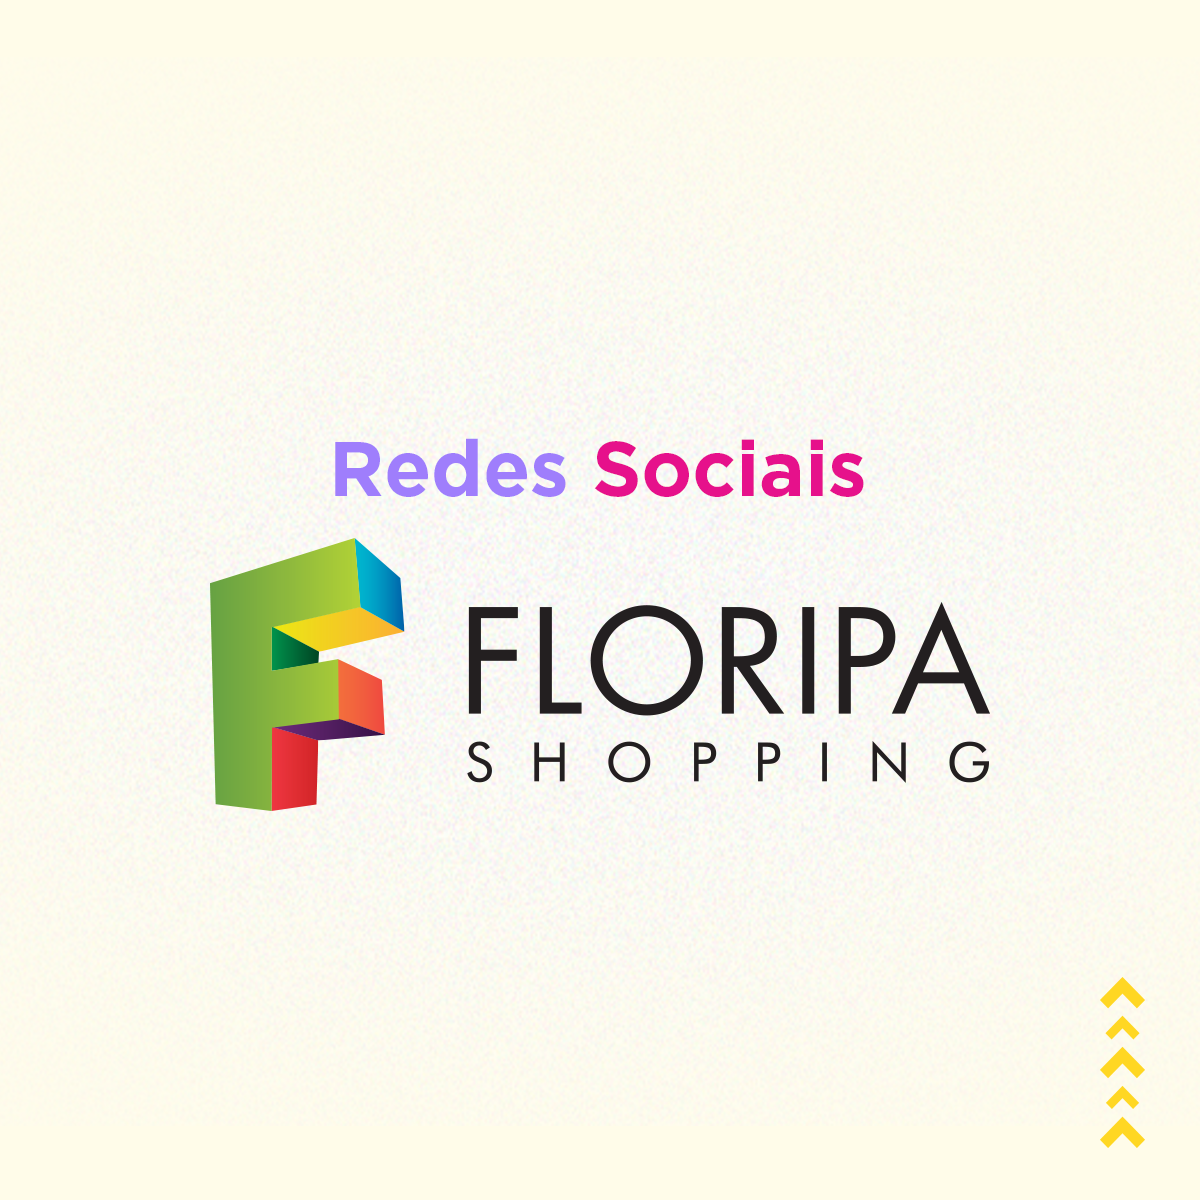 Redes Sociais – Floripa Shopping